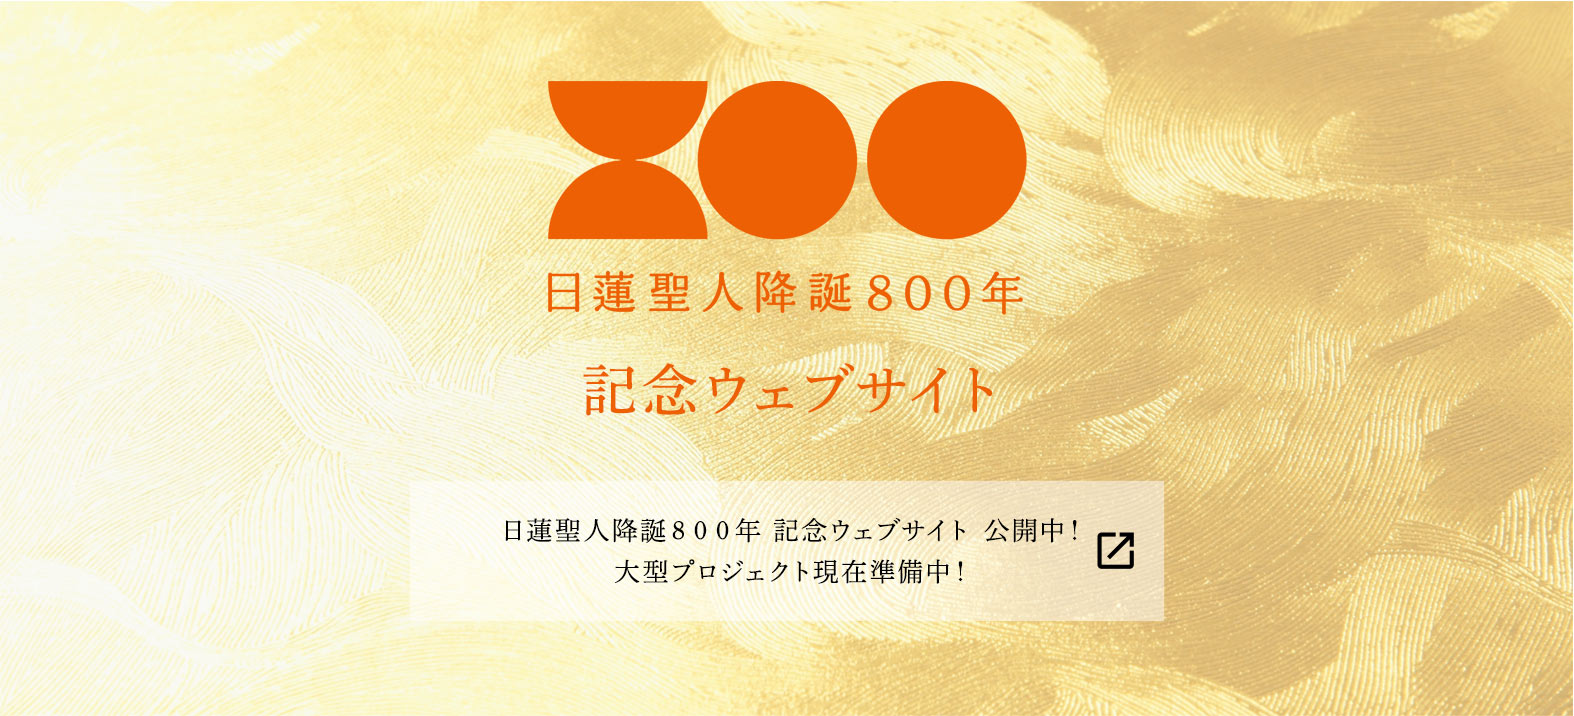 日蓮聖人降誕800年 記念サイト 大型プロジェクト準備中！